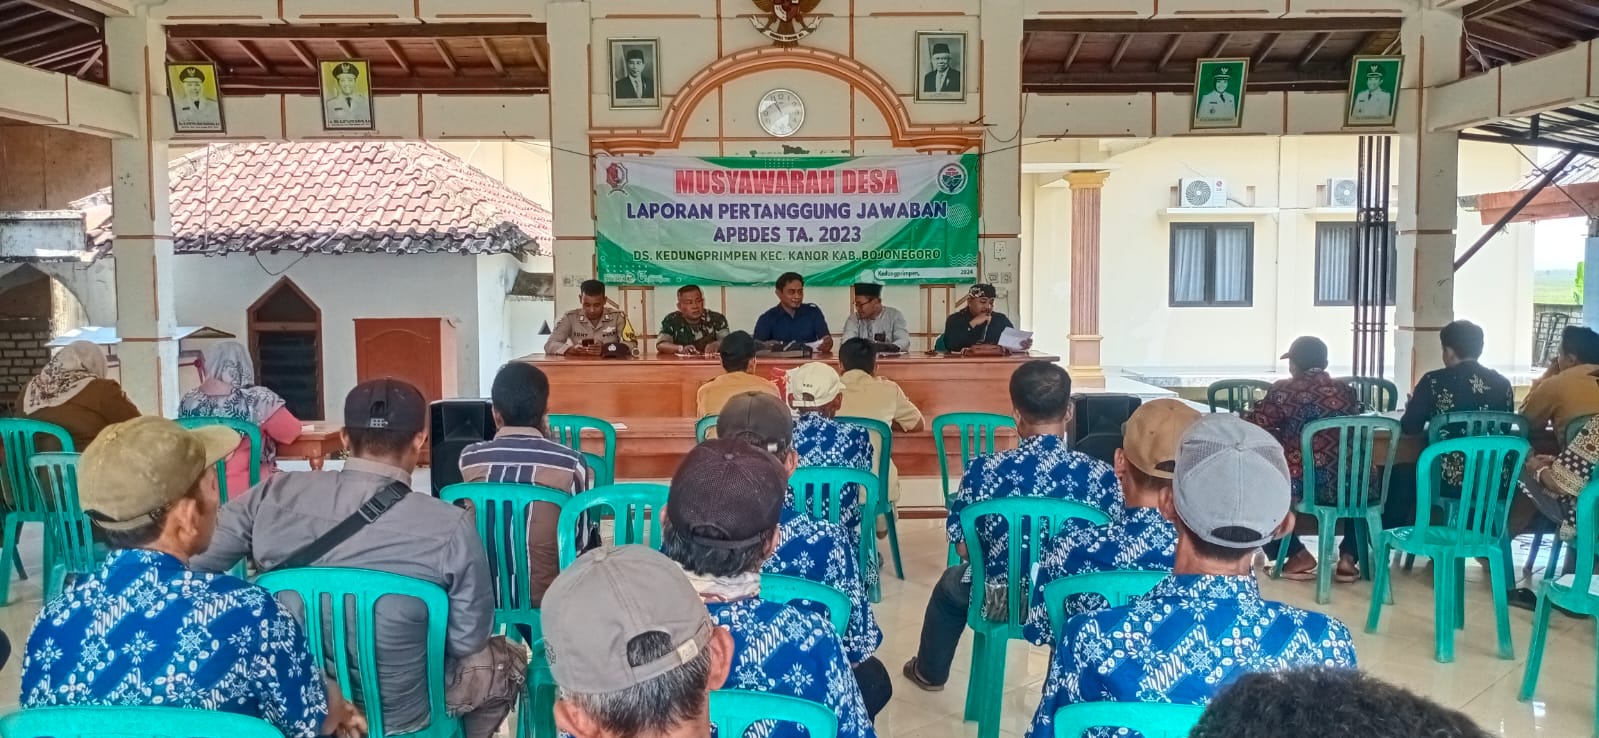 Musyawarah Desa Laporan Pertanggungjawaban APBDes Tahun Anggaran 2023 Desa Kedungprimpen 